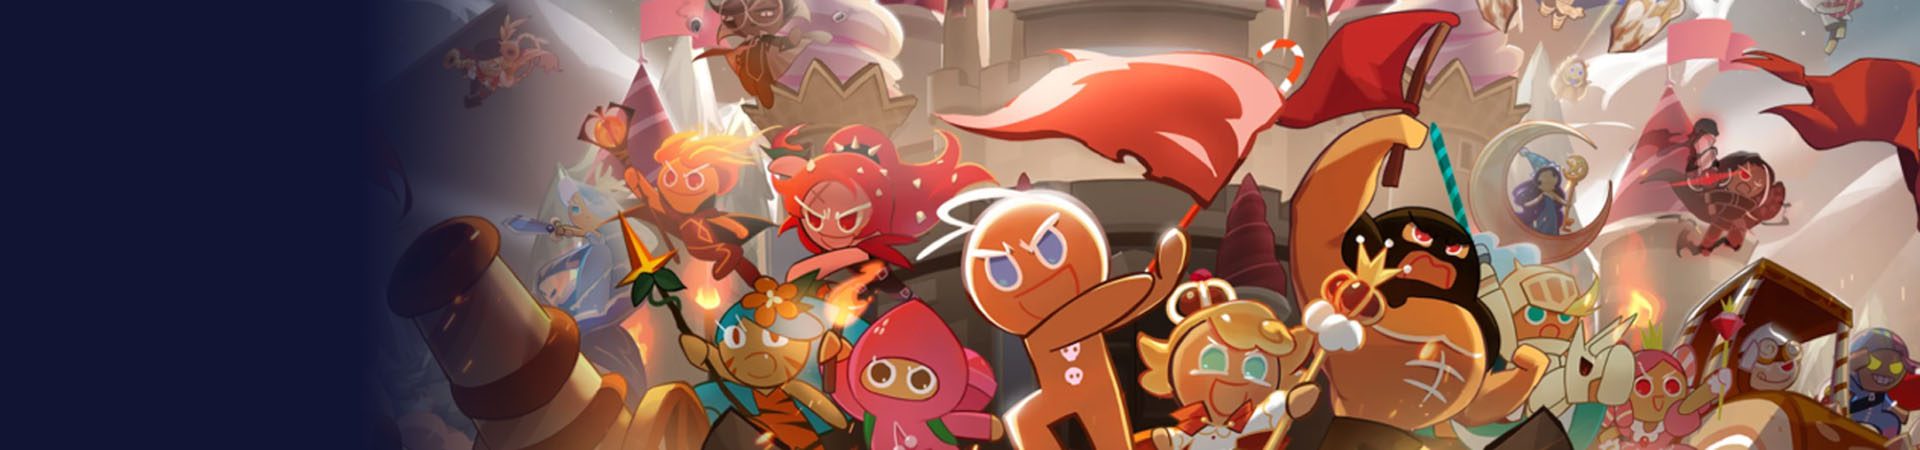 3 neue Cookie Run-Spiele von Devsisters Studio angekündigt banner